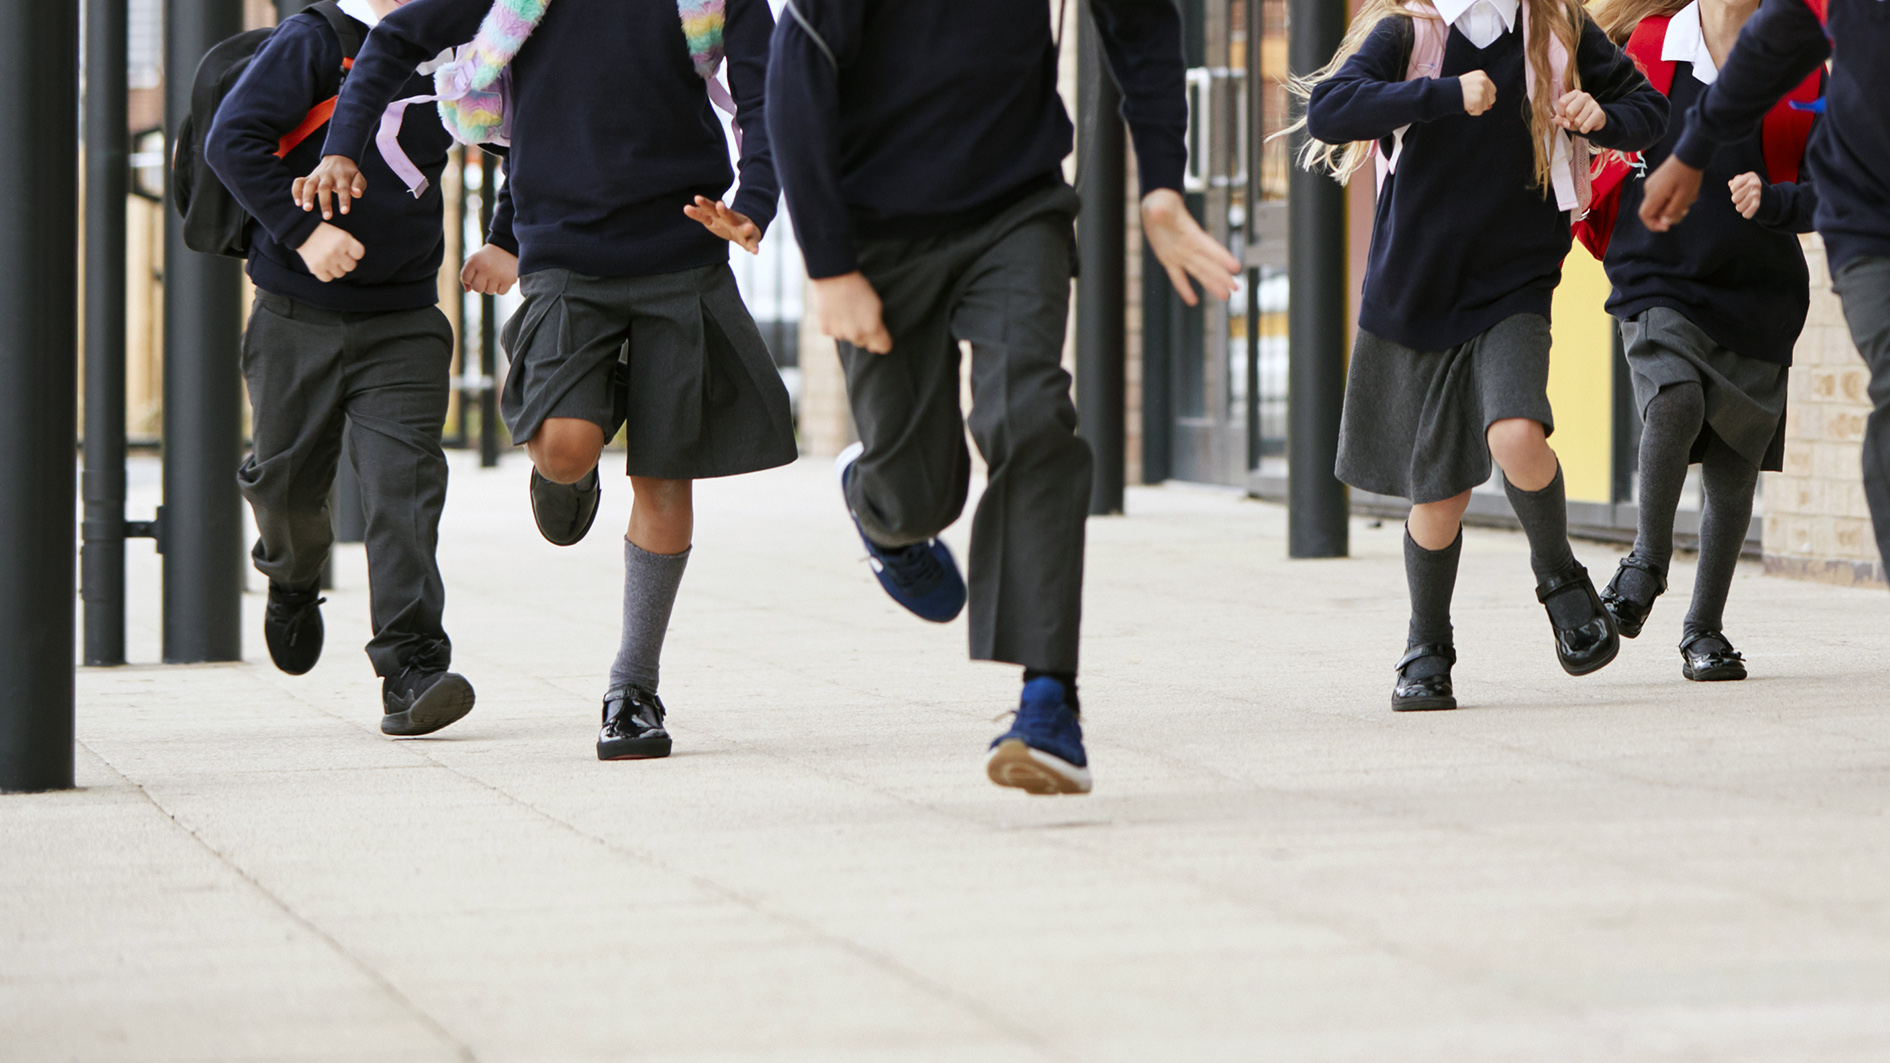 Small children running across a school yard